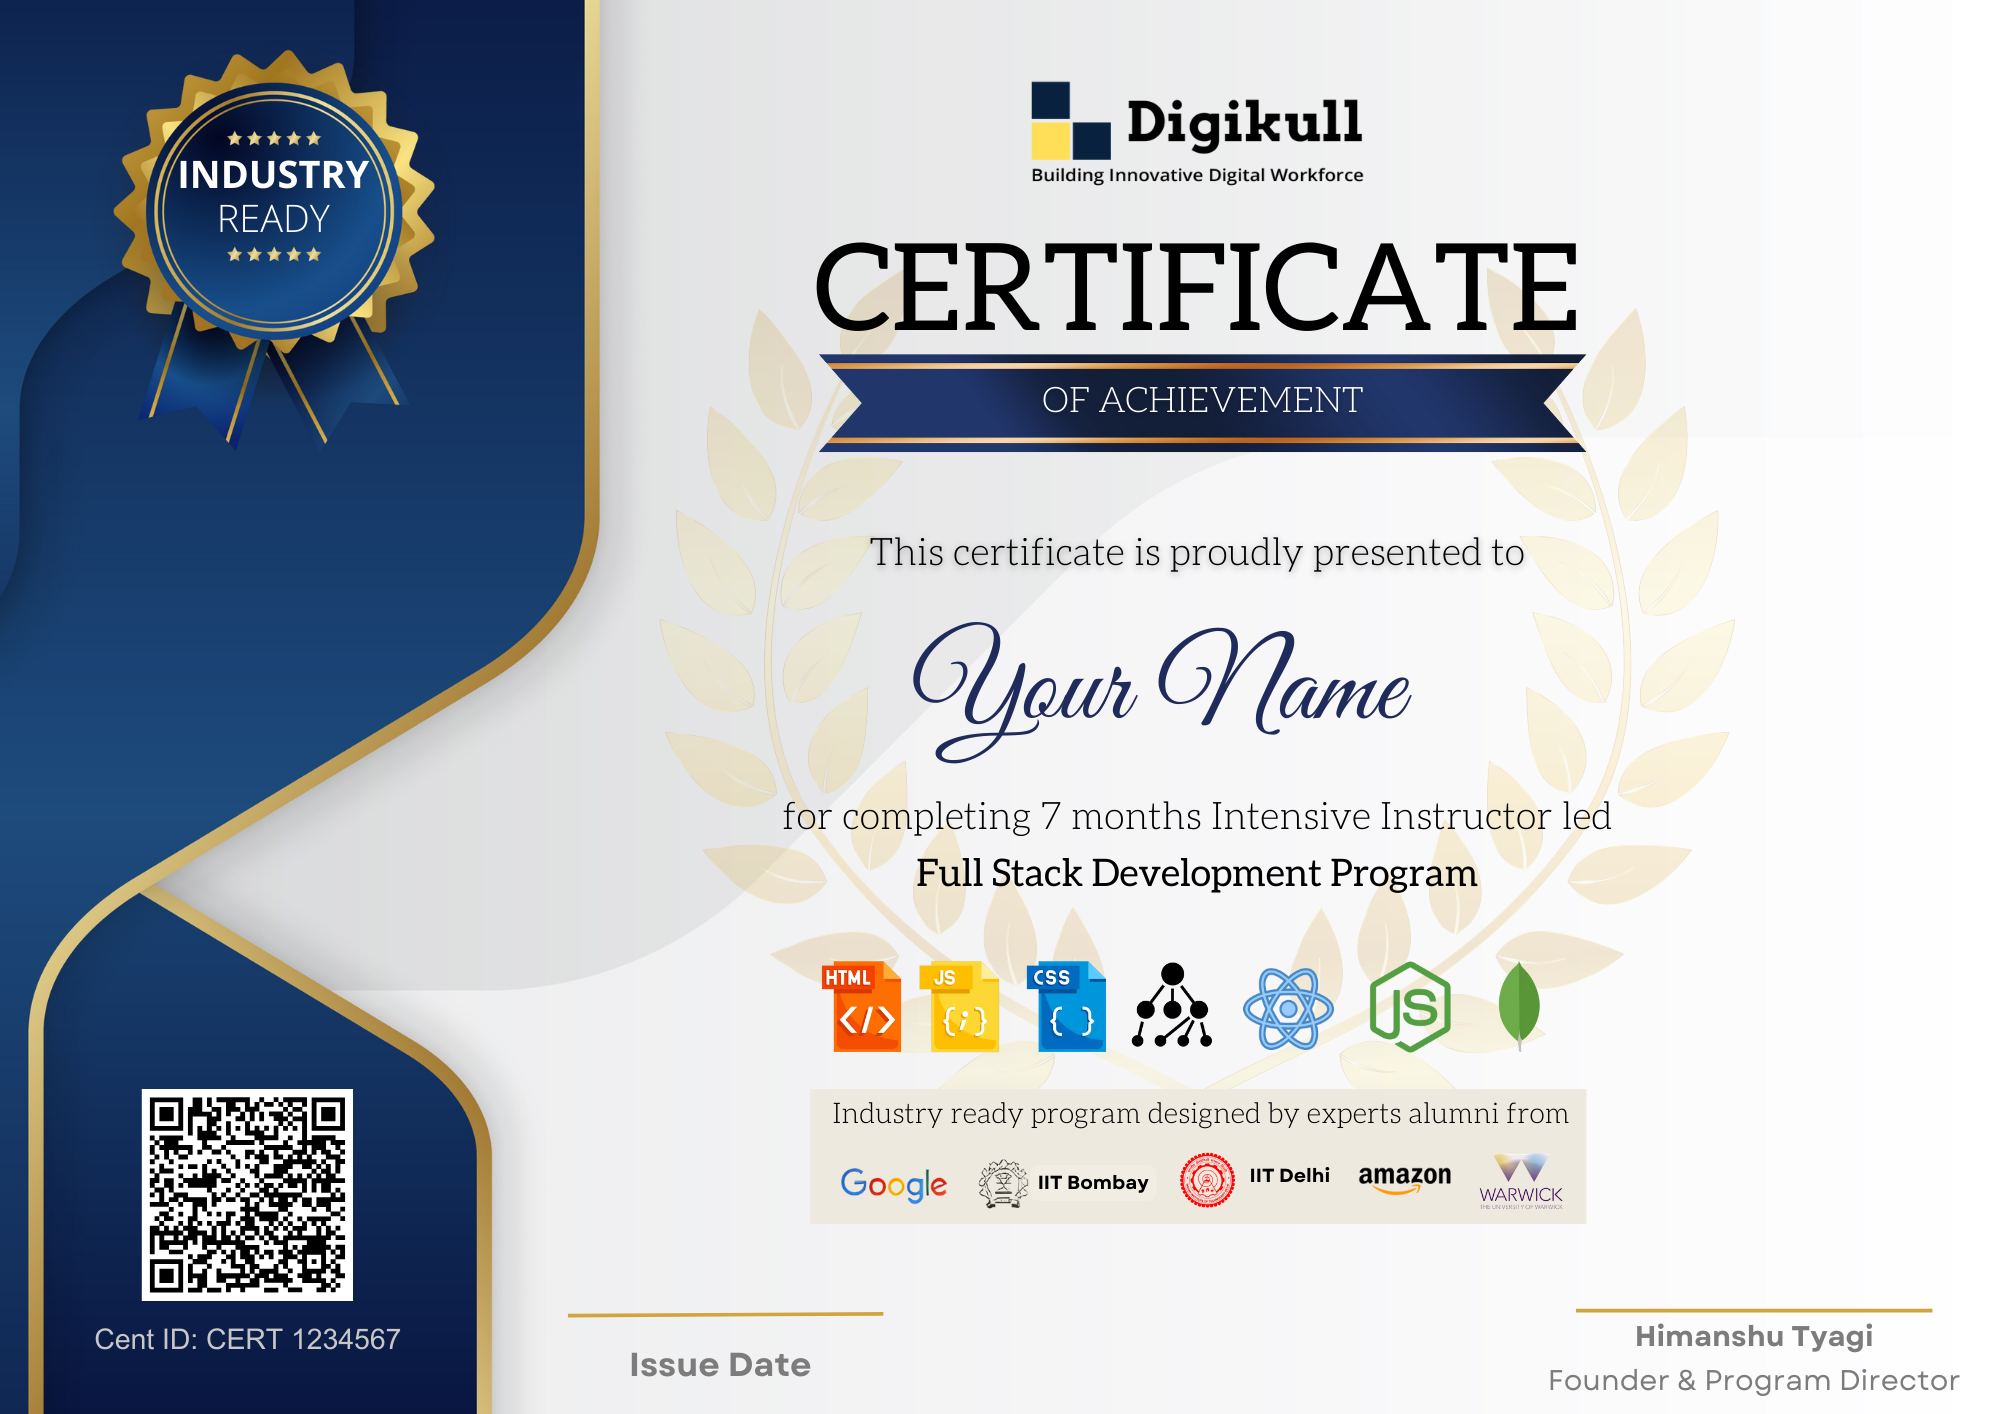 Digikull Certification